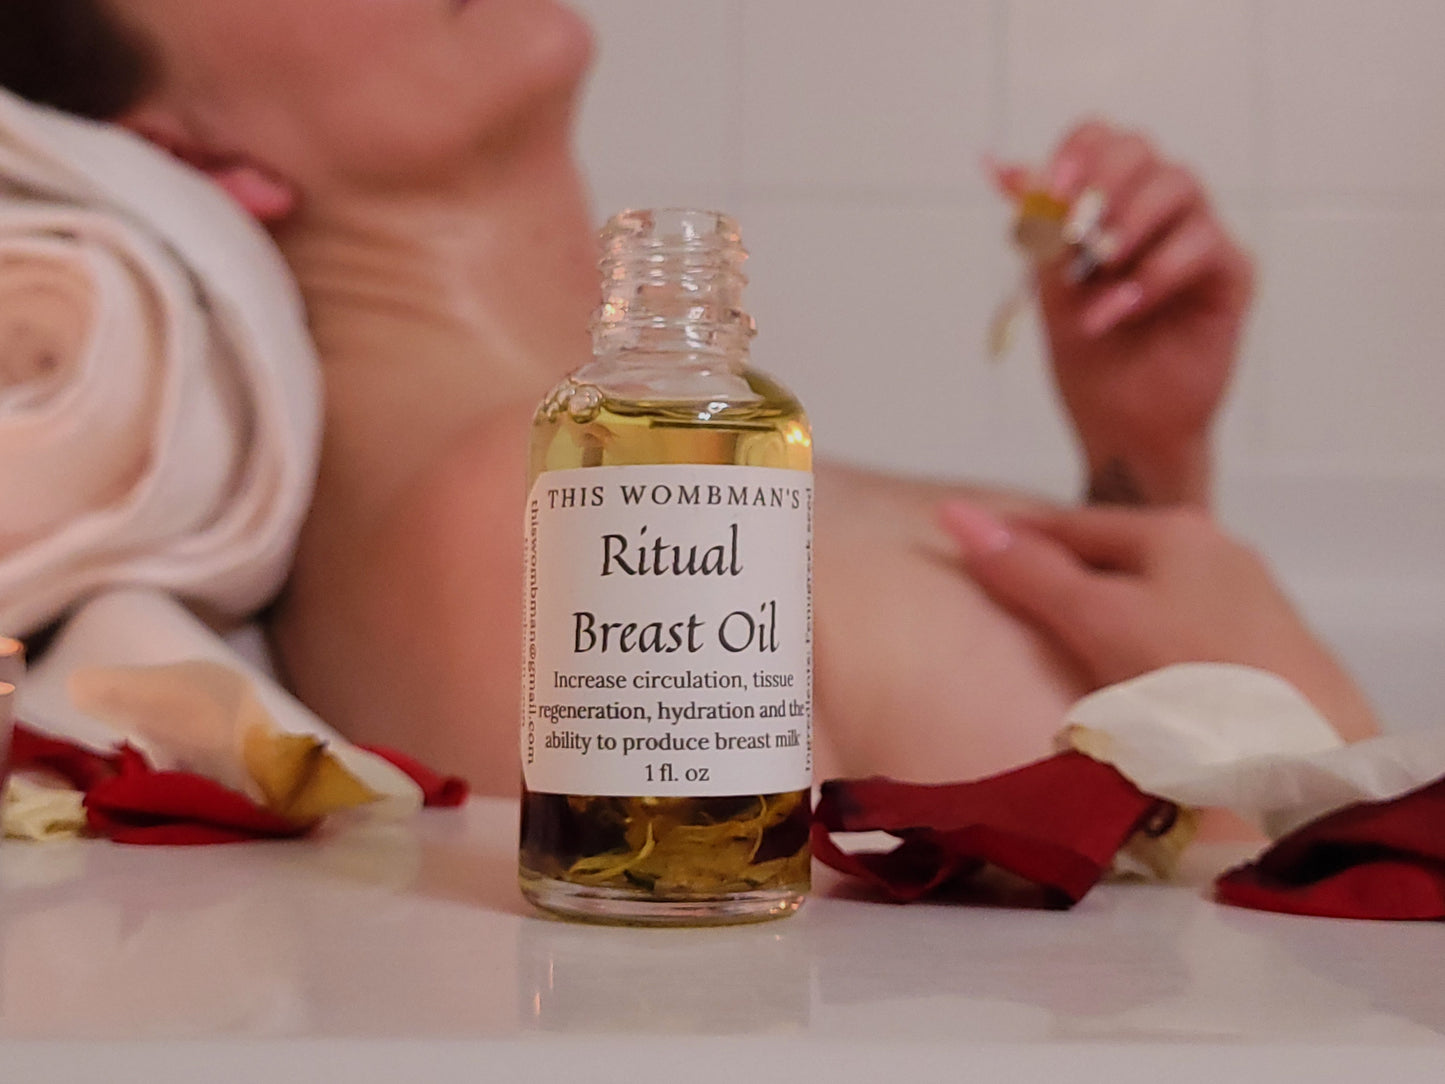 Breast Oil